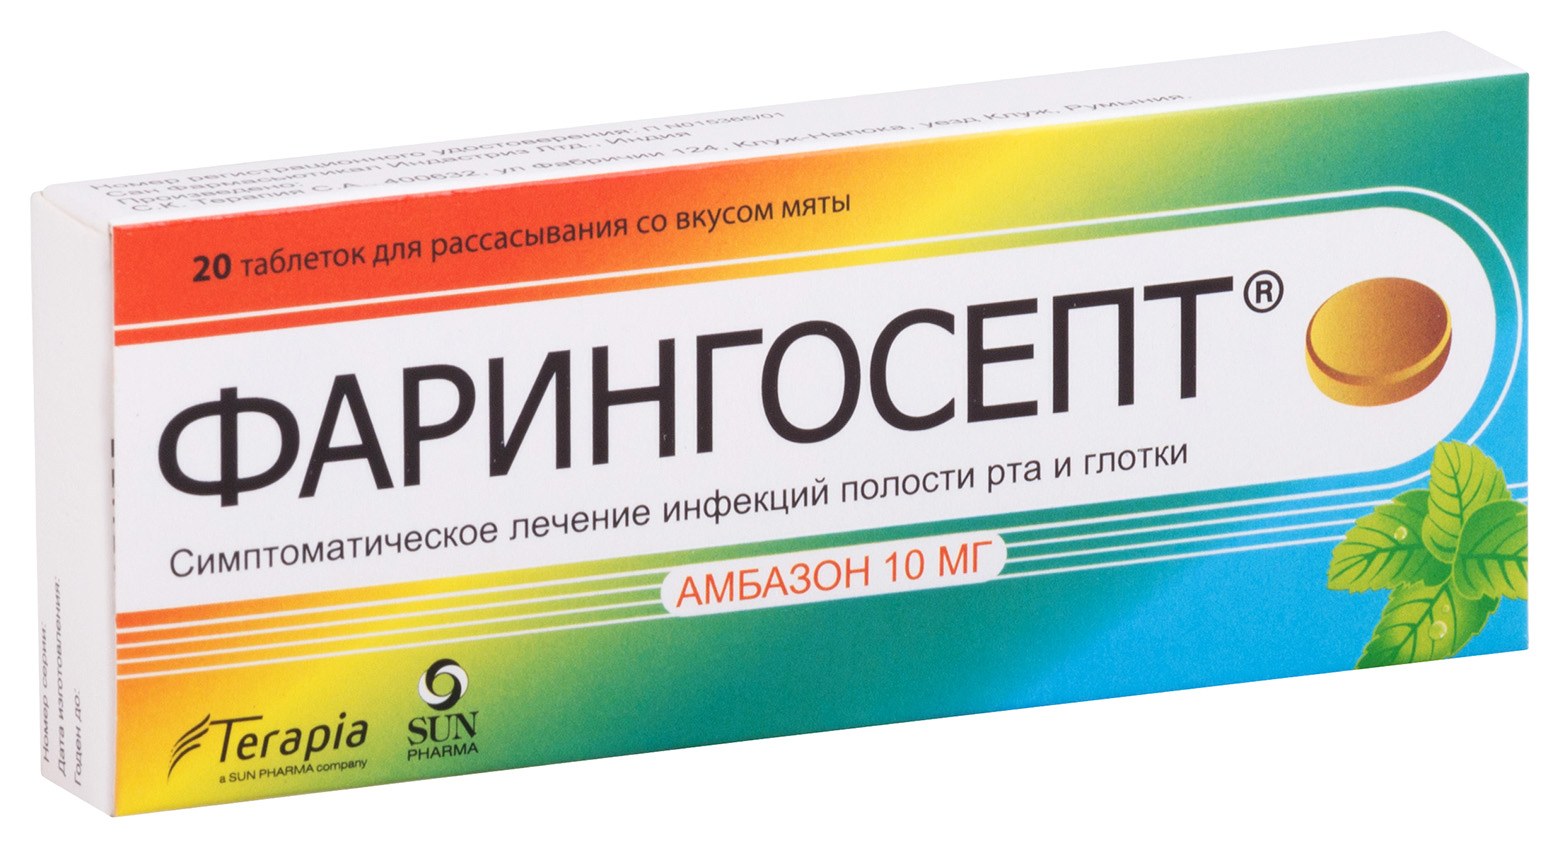 Купить Фарингосепт мята таблетки для рассасывания 10 мг 20 шт., Terapia